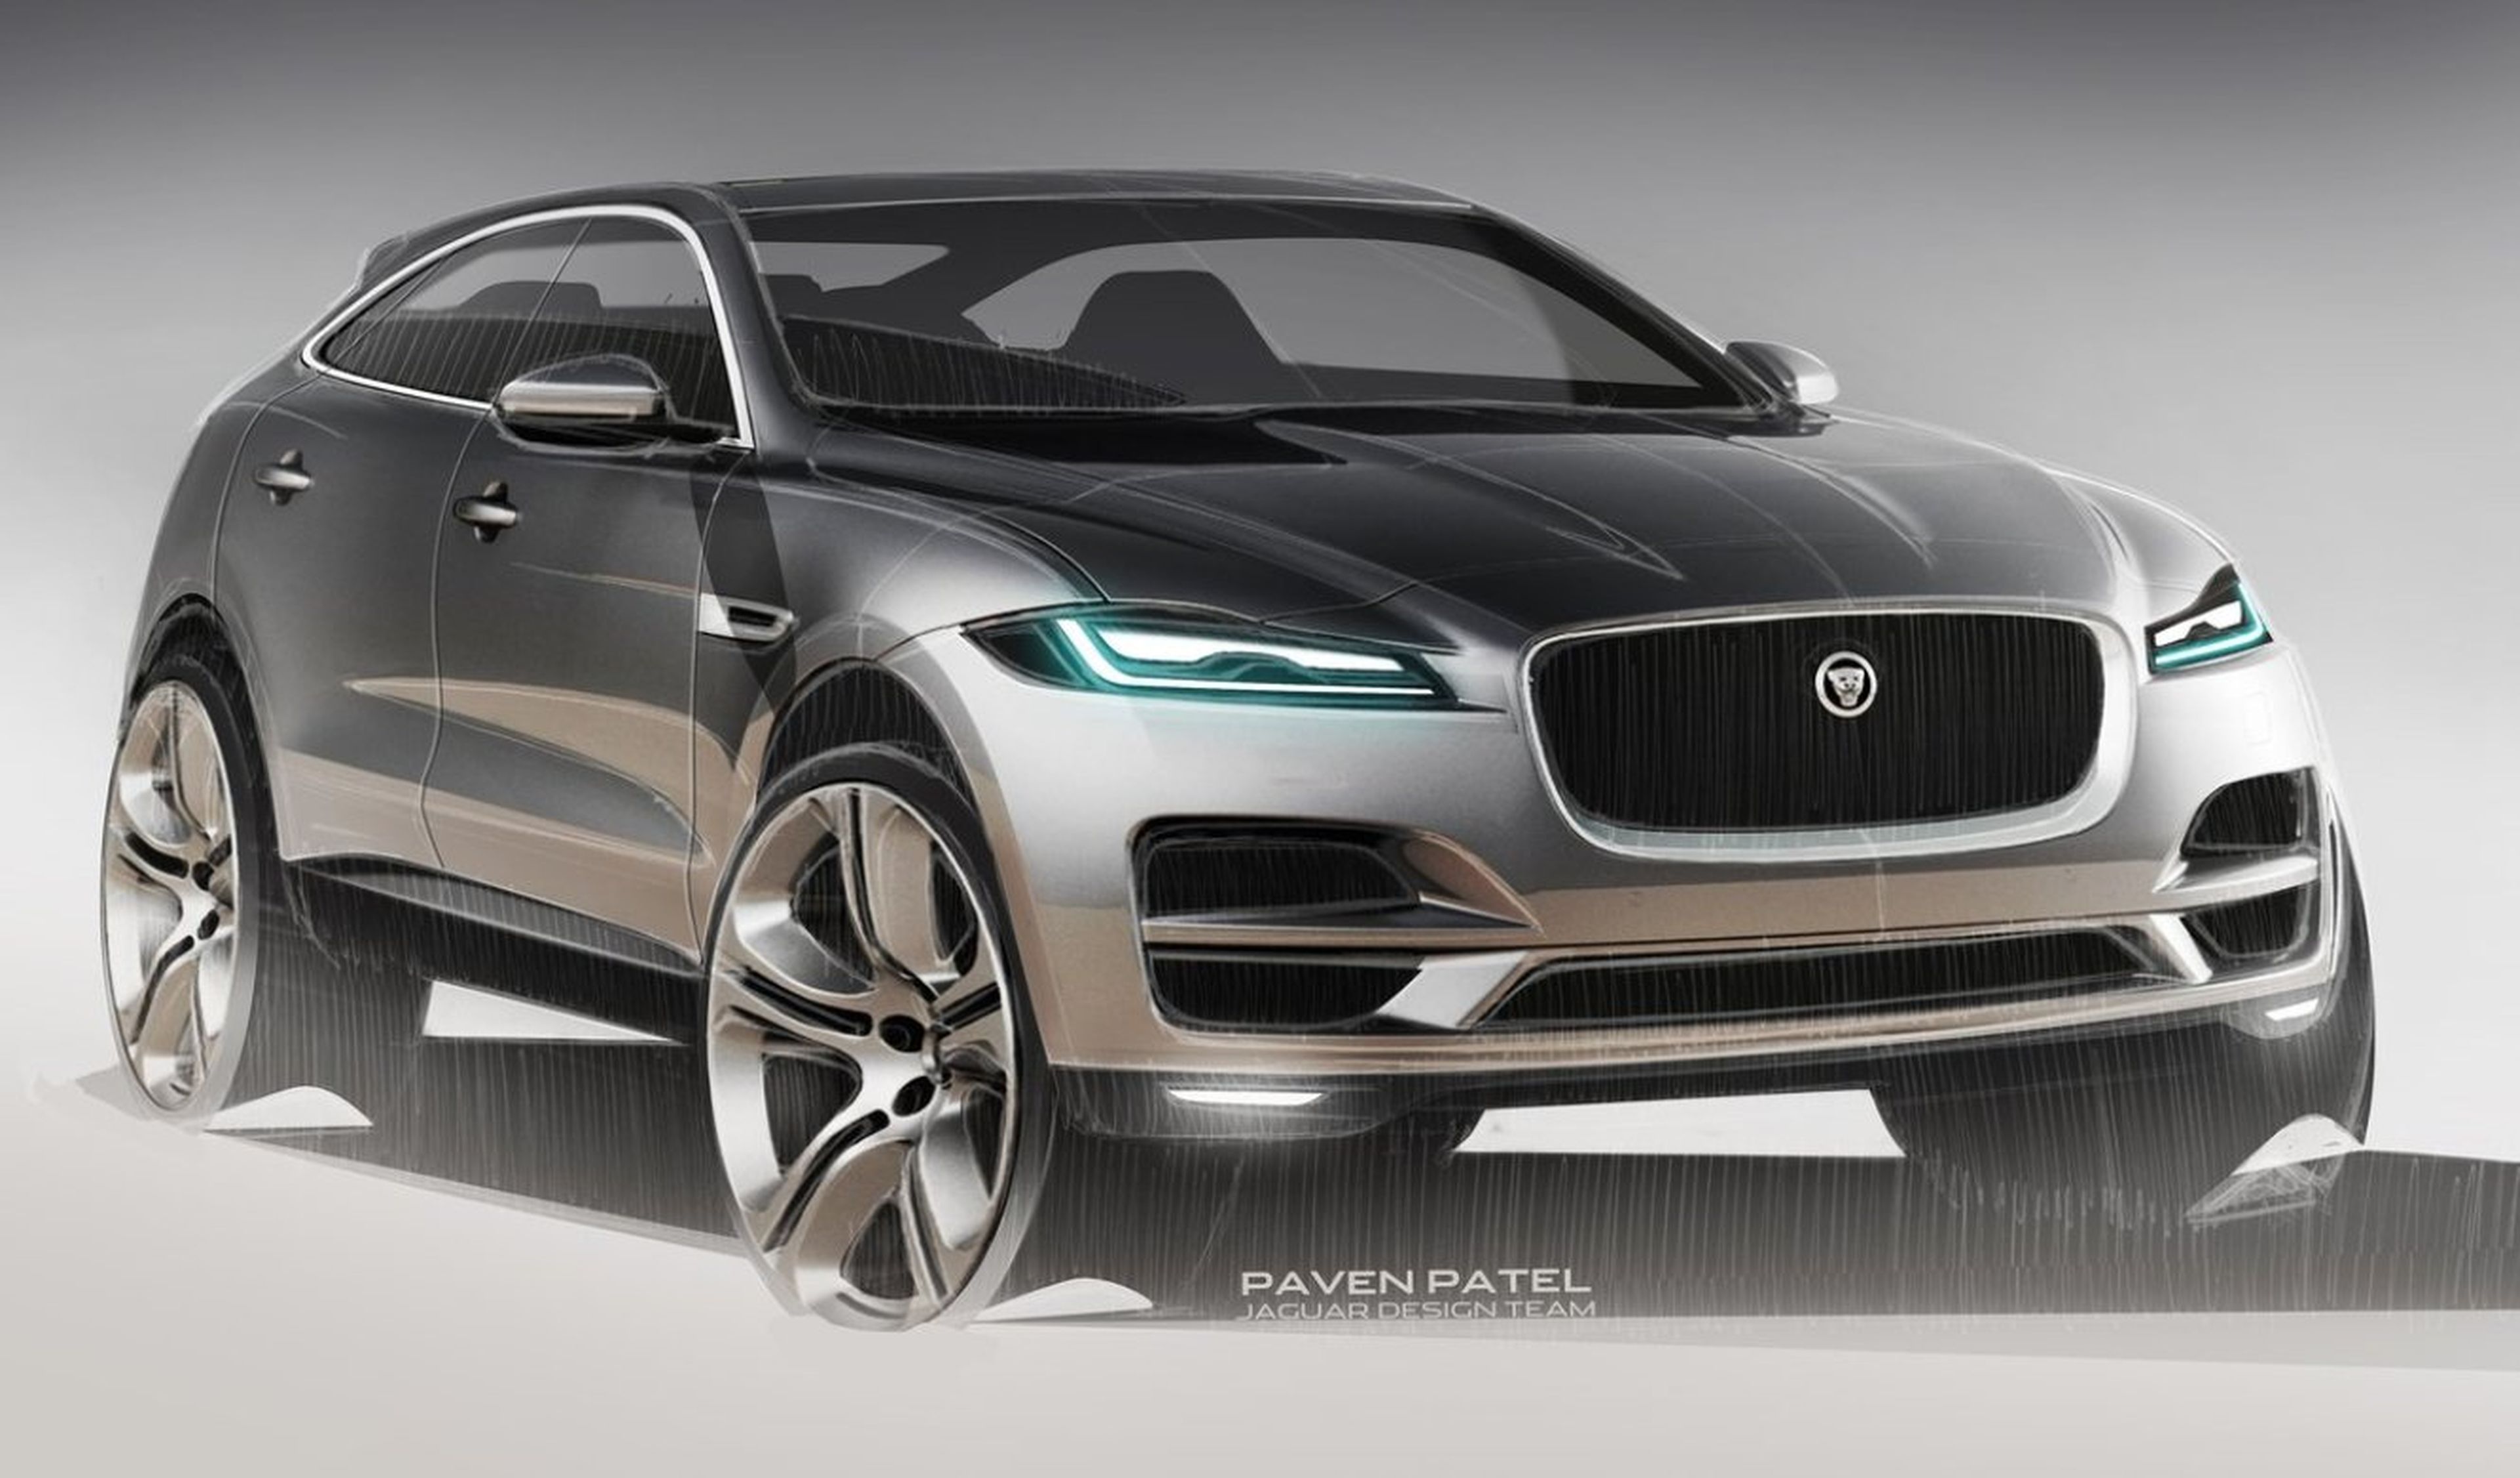 En Jaguar creen que se reinventará el diseño de coches